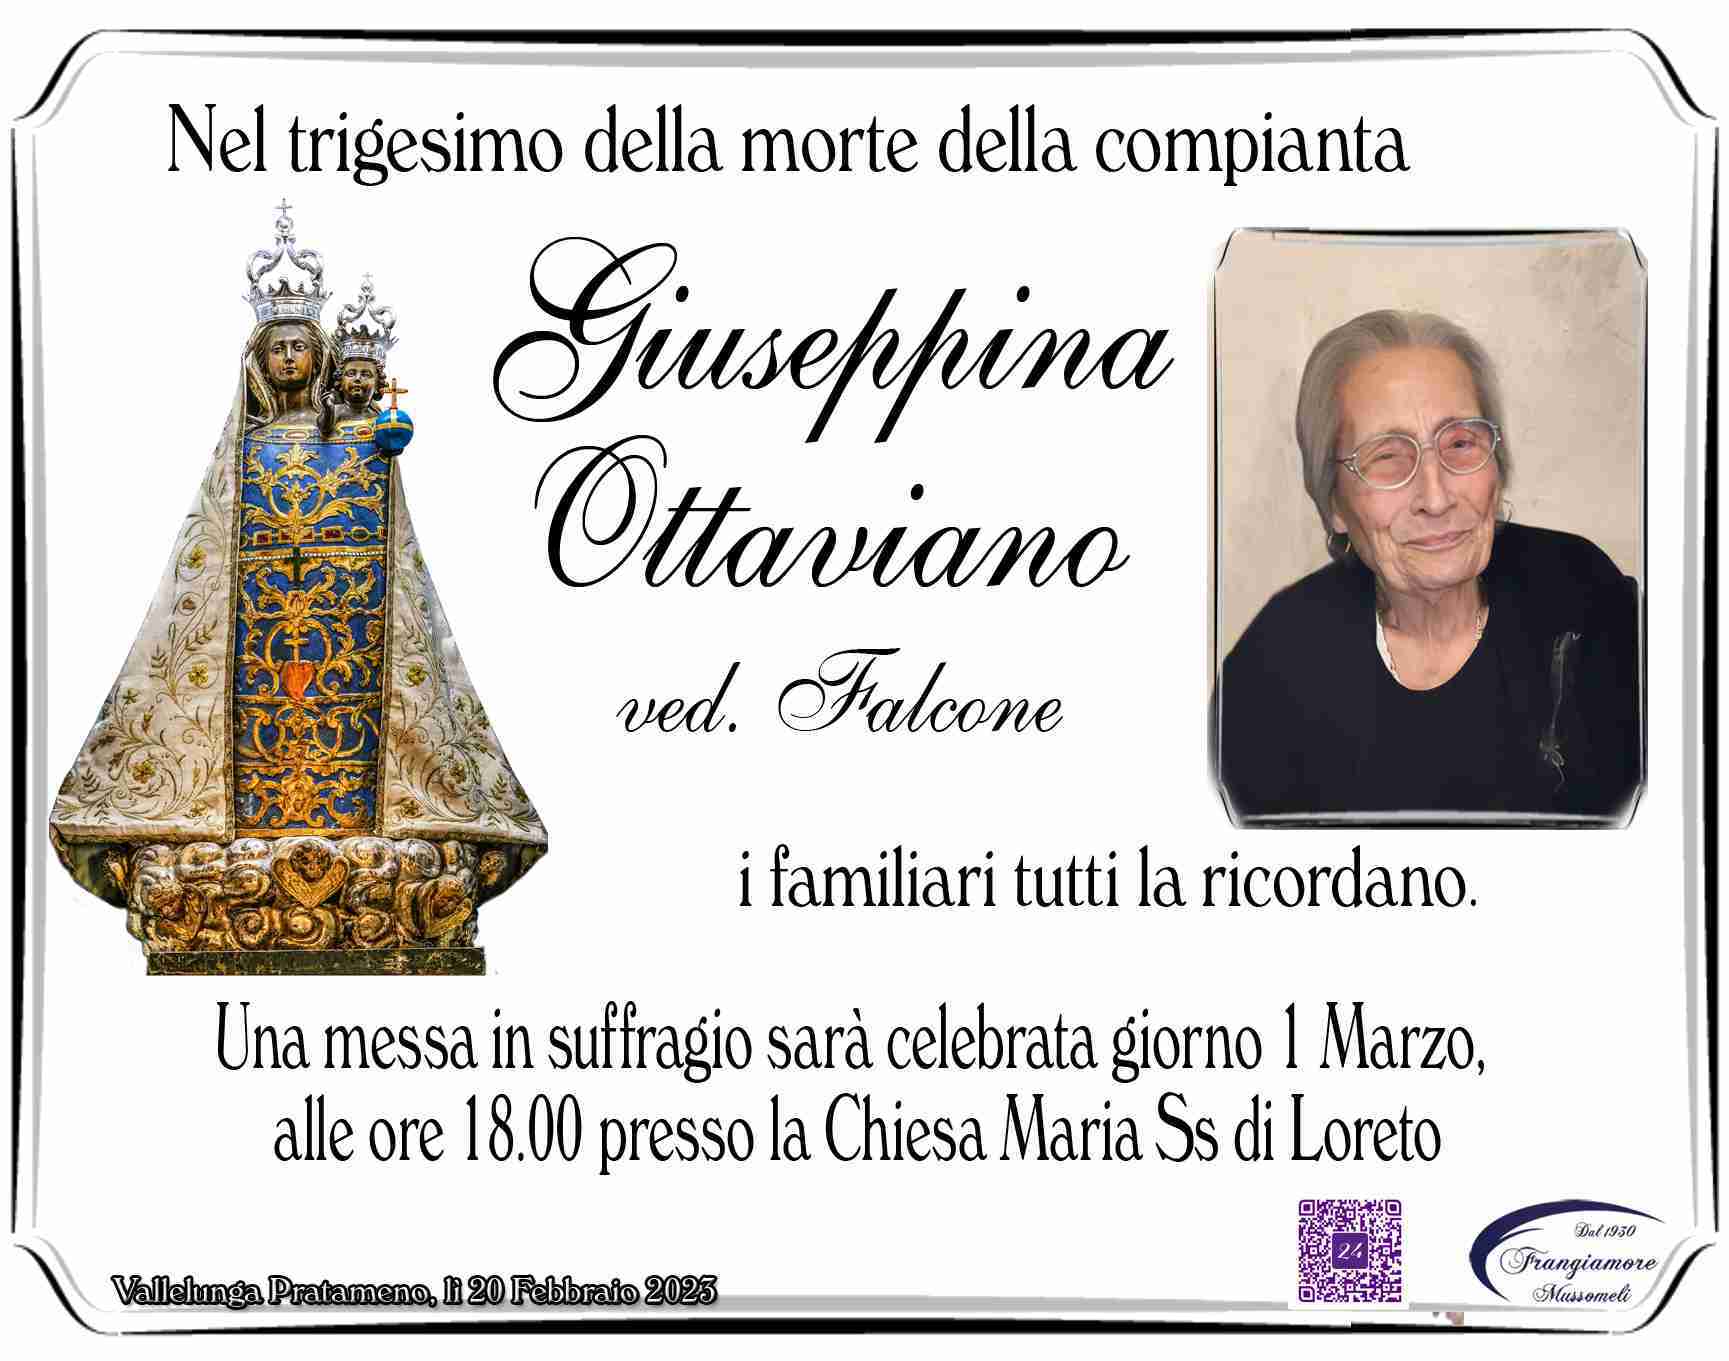 Giuseppina Ottaviano